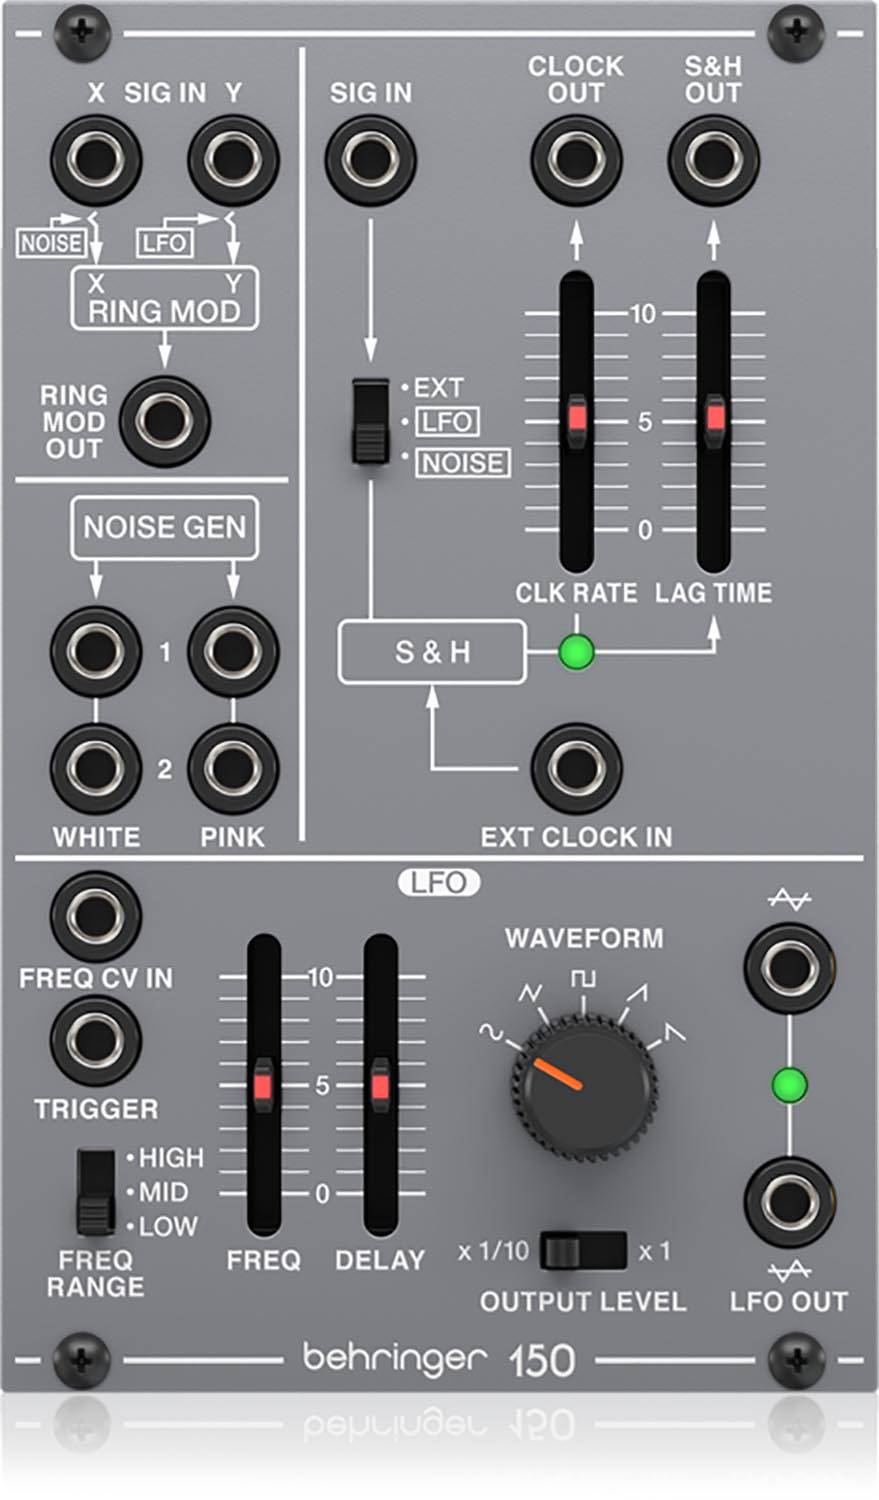 Behringer 150 RING MOD/NOISE/S&H/LFO, Legendary Analog Ring Modulator/Noise/S&H/LFO Module For Eurorack - Hollywood DJ